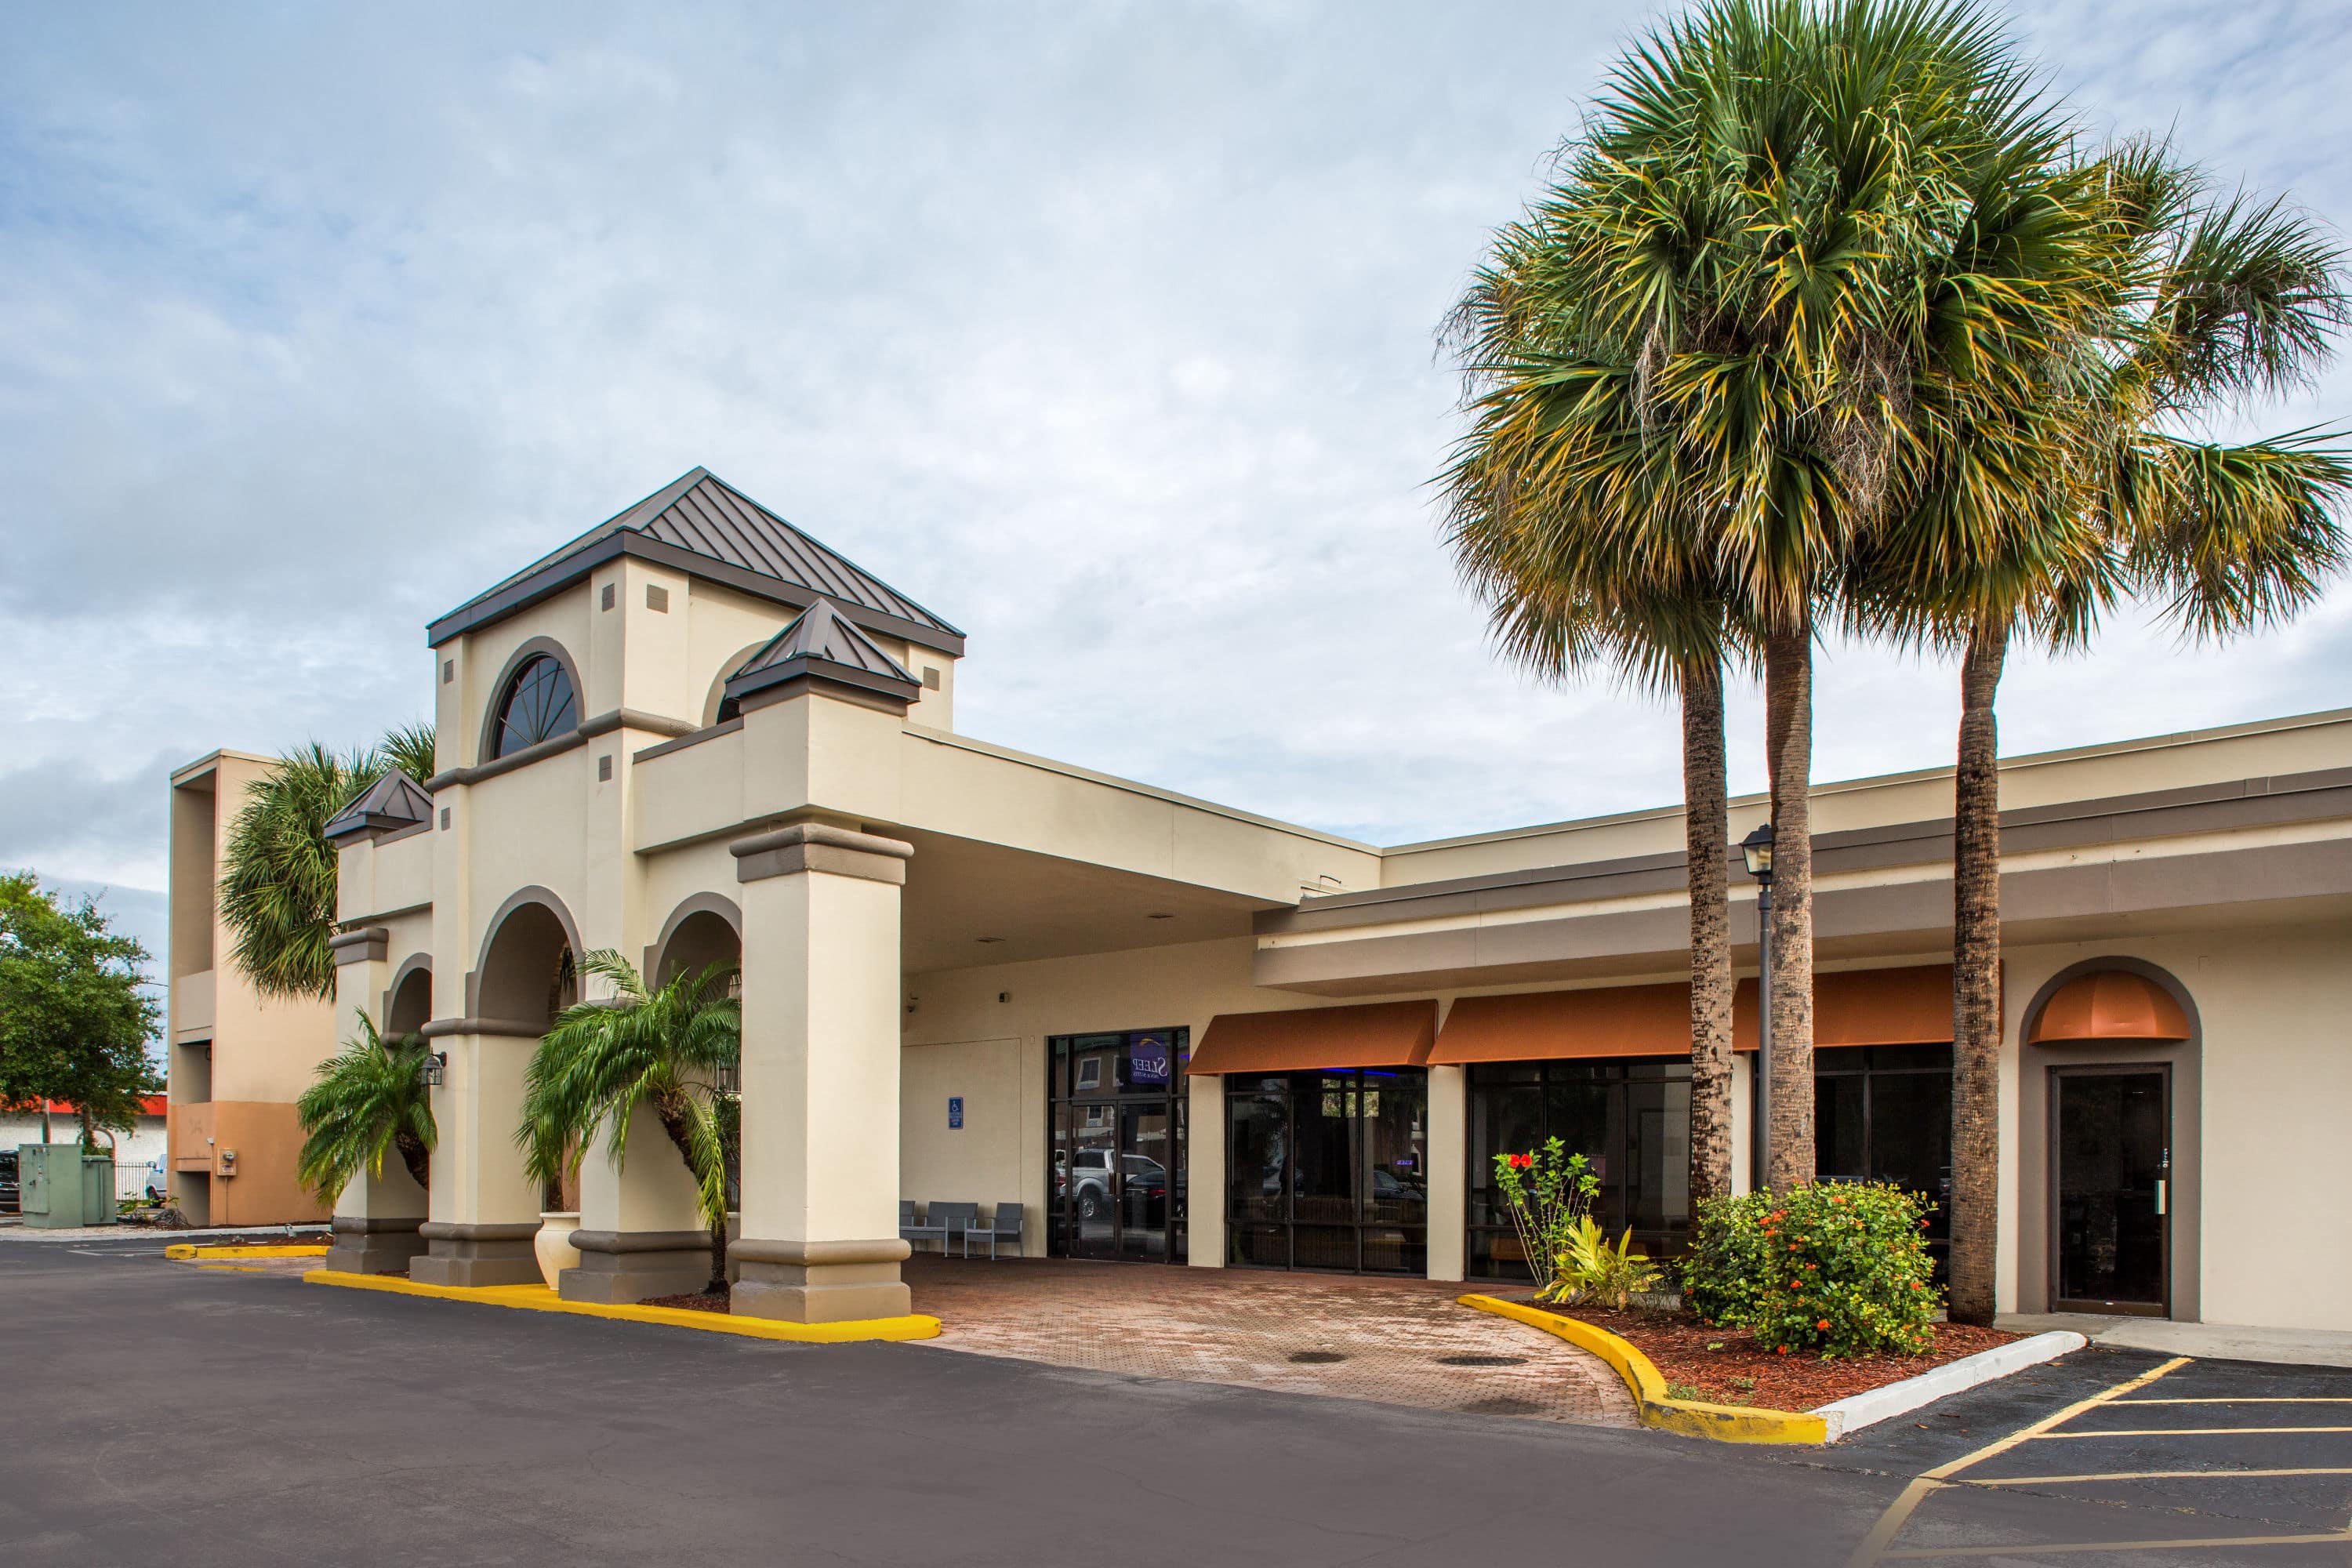 Days Inn by Wyndham Orlando Conv. Center/International Dr, Orlando (FL)